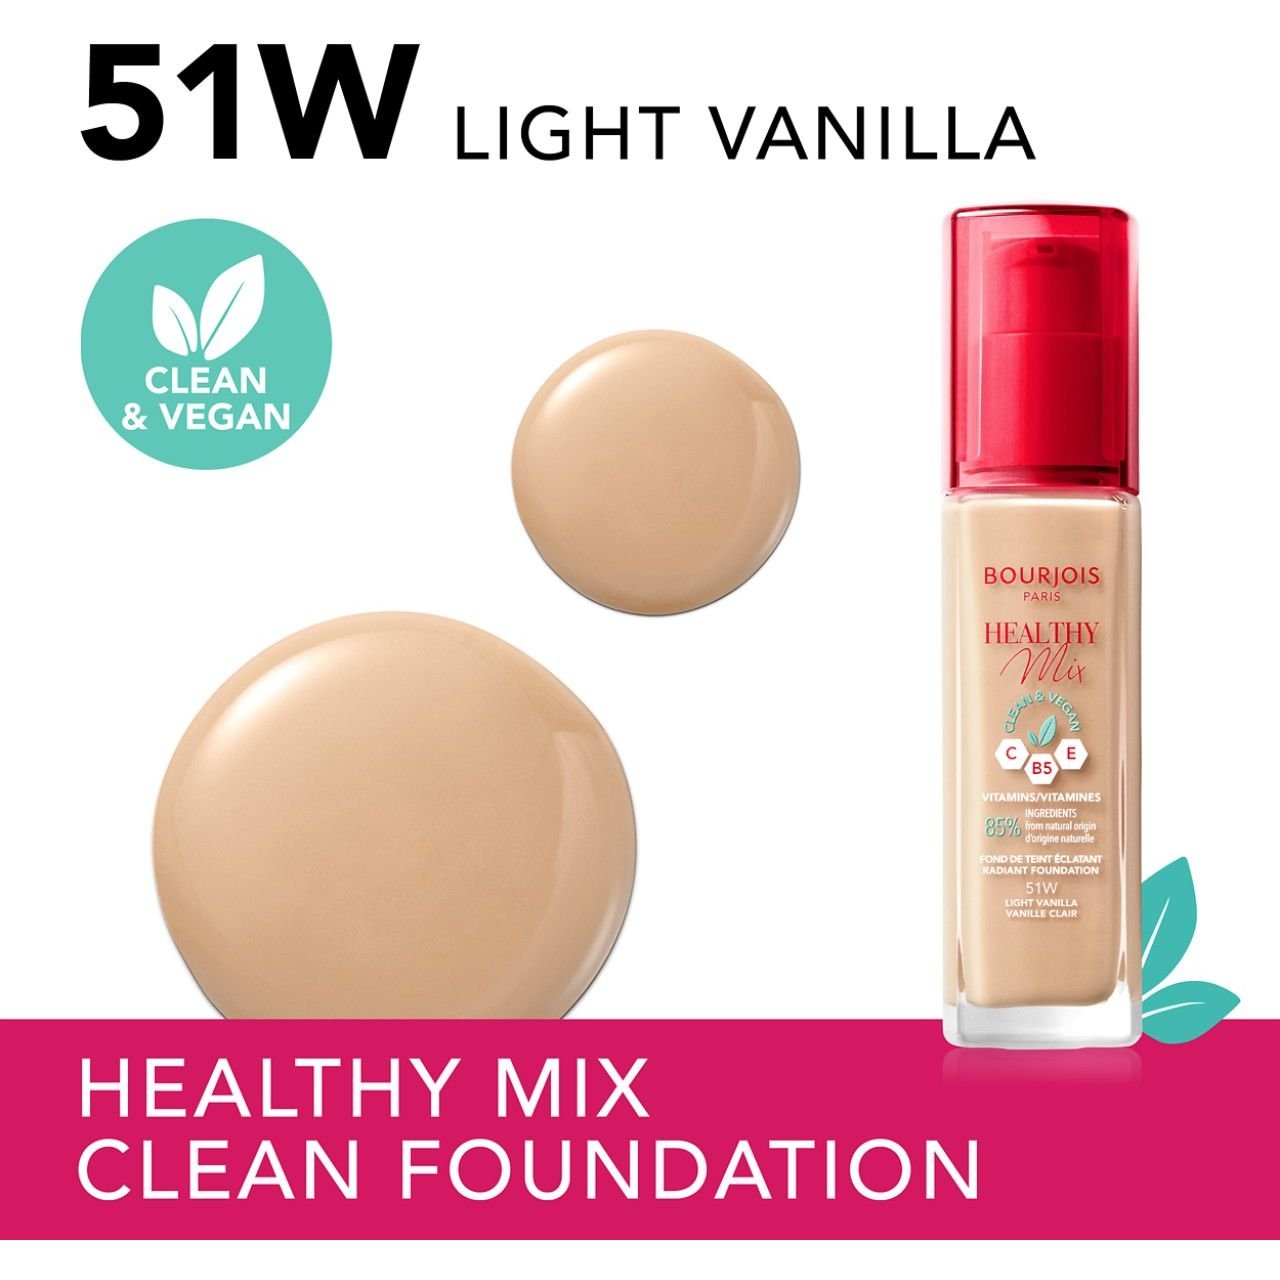 Тональная основа Bourjois Healthy Mix Clean & Vegan тон 51W (Light Vanilla) 30 мл - фото 3